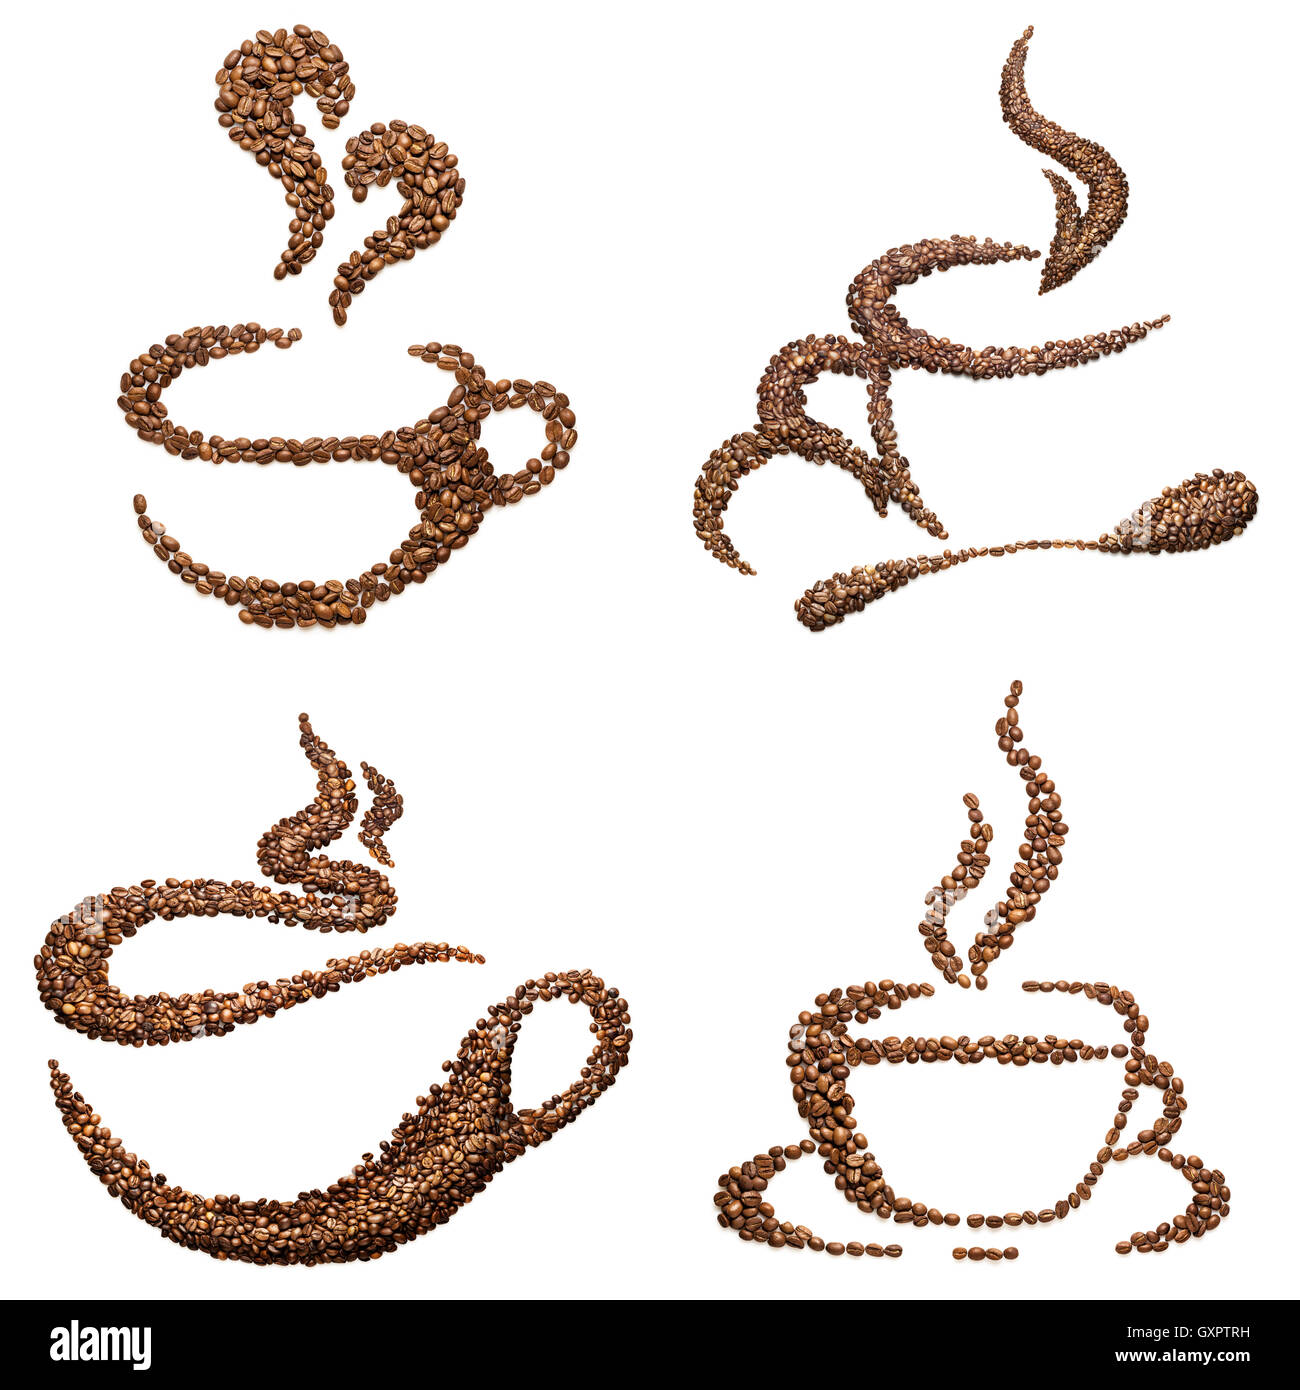 Satz von Tassenformen von gerösteten Kaffeebohnen isoliert auf weiss  Stockfotografie - Alamy